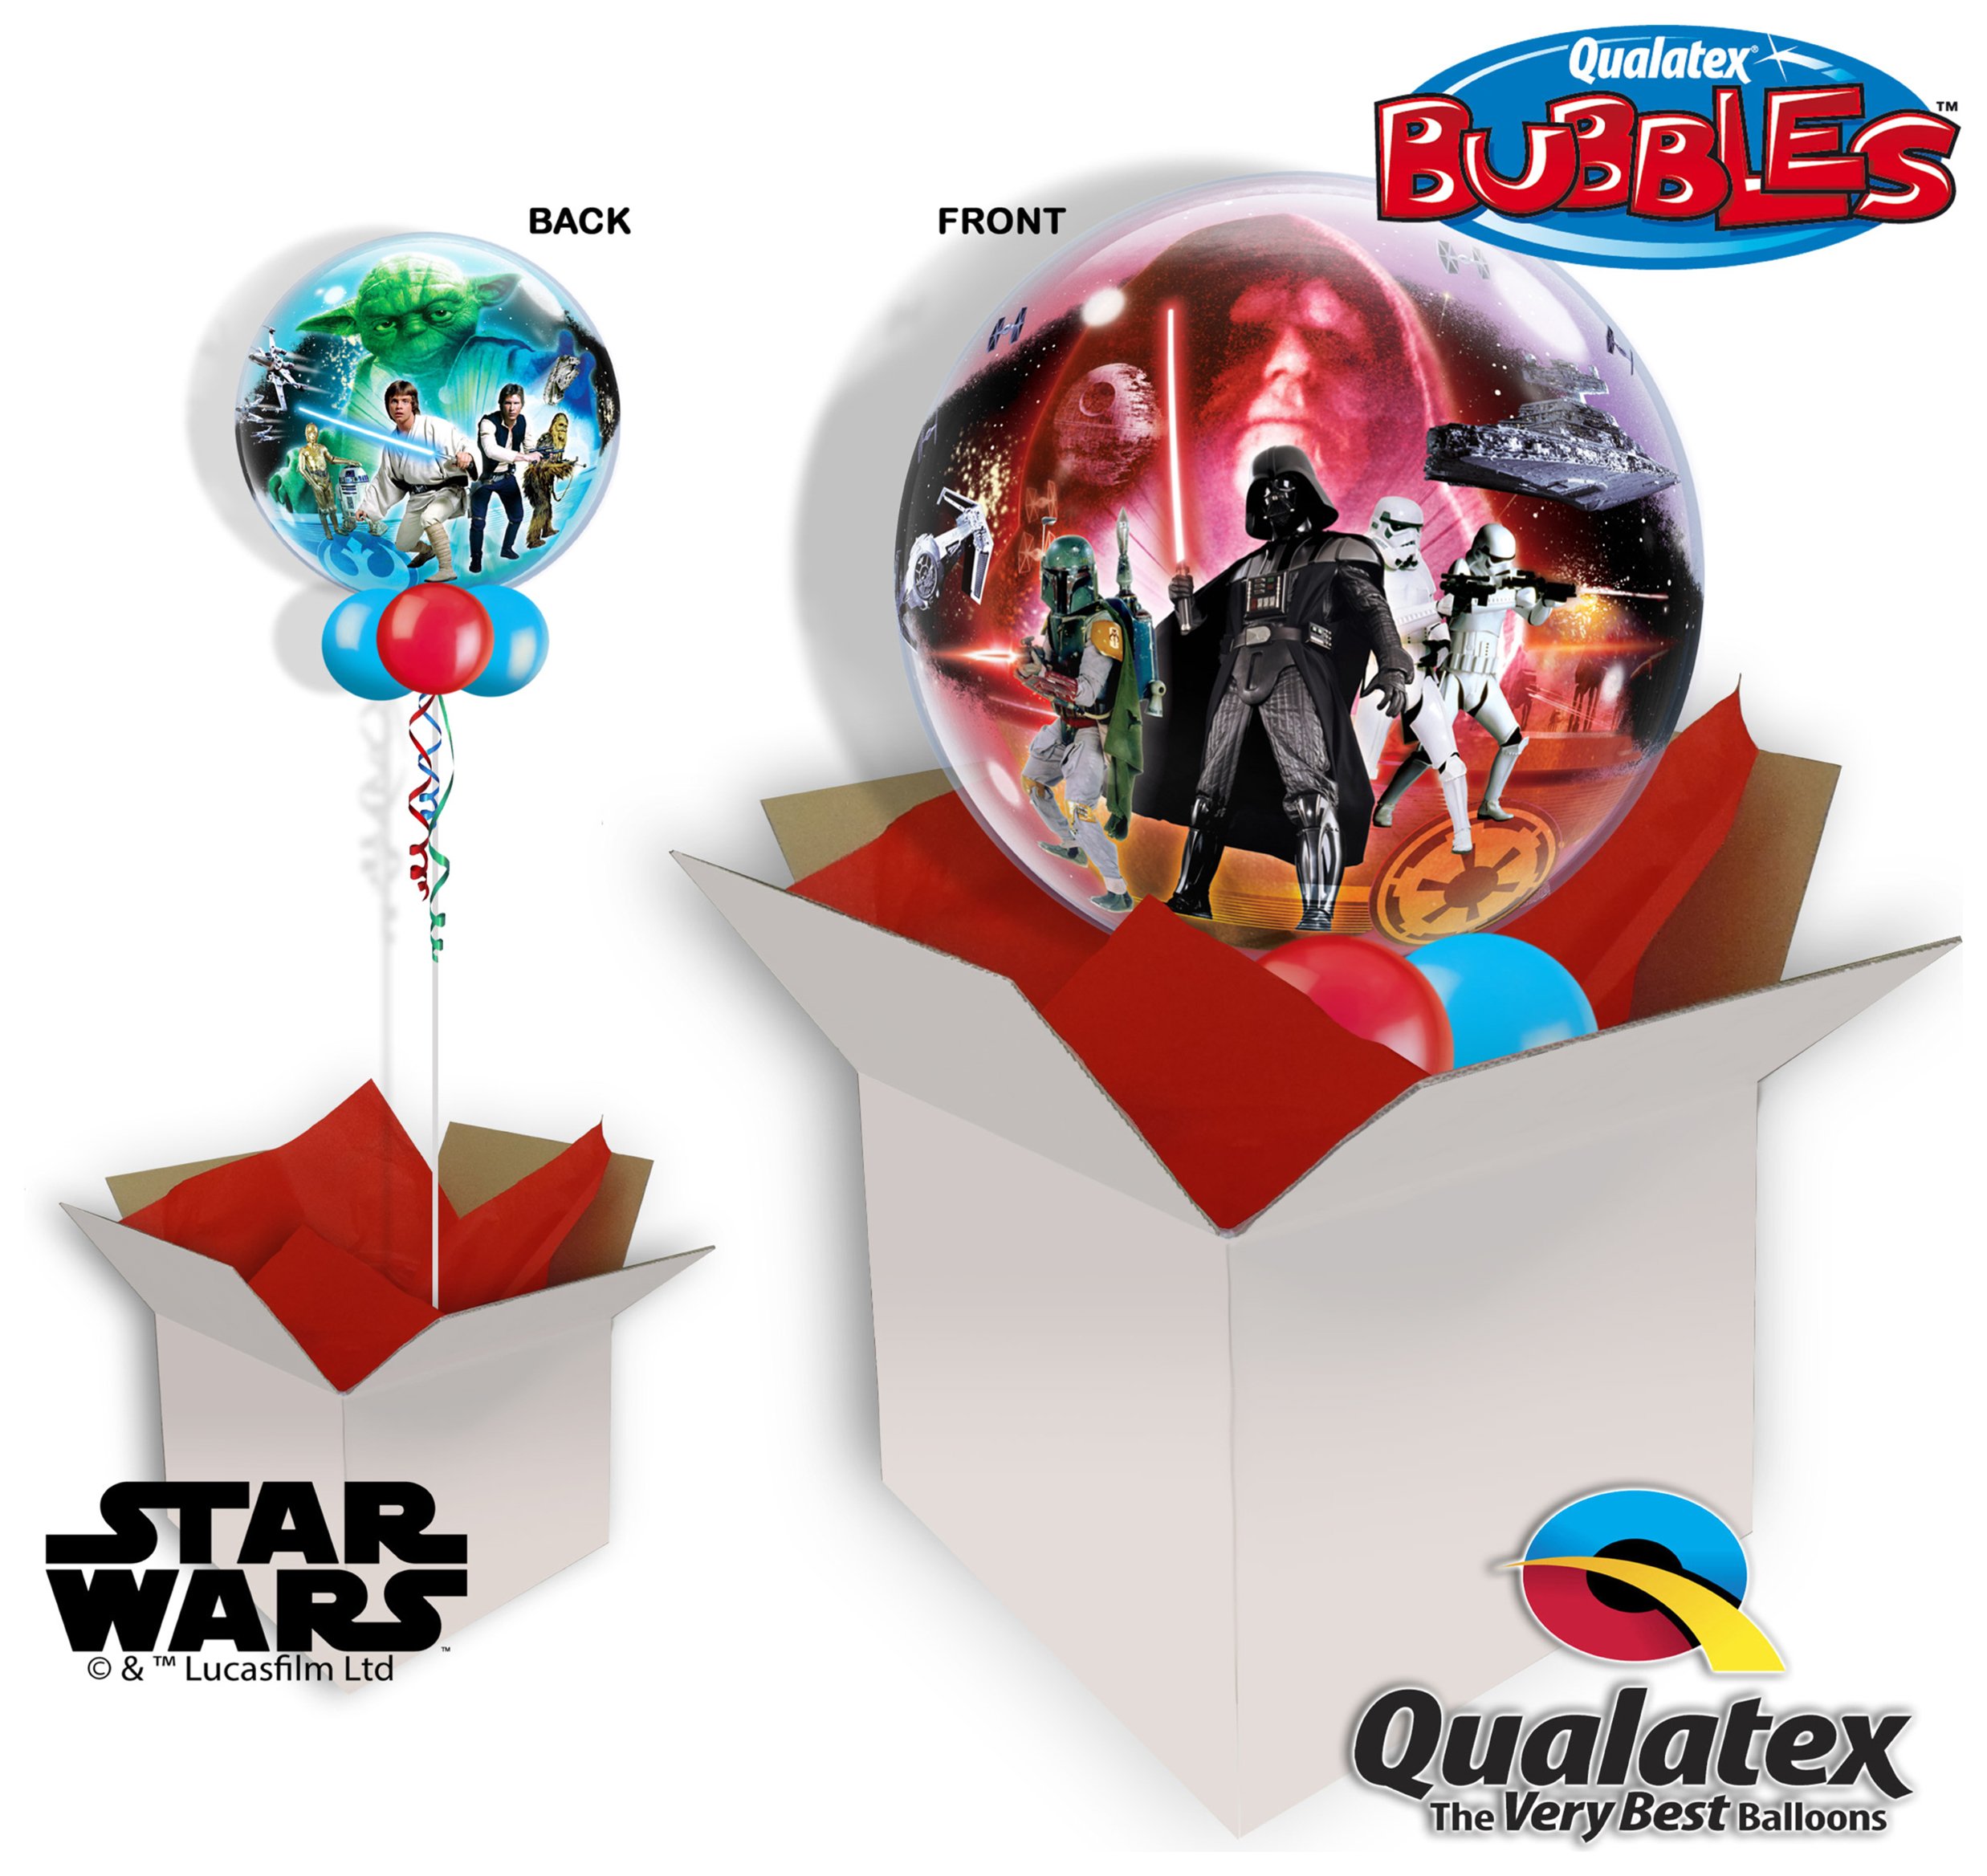 Star Wars 22 Inch Bubble Balloon In A Box